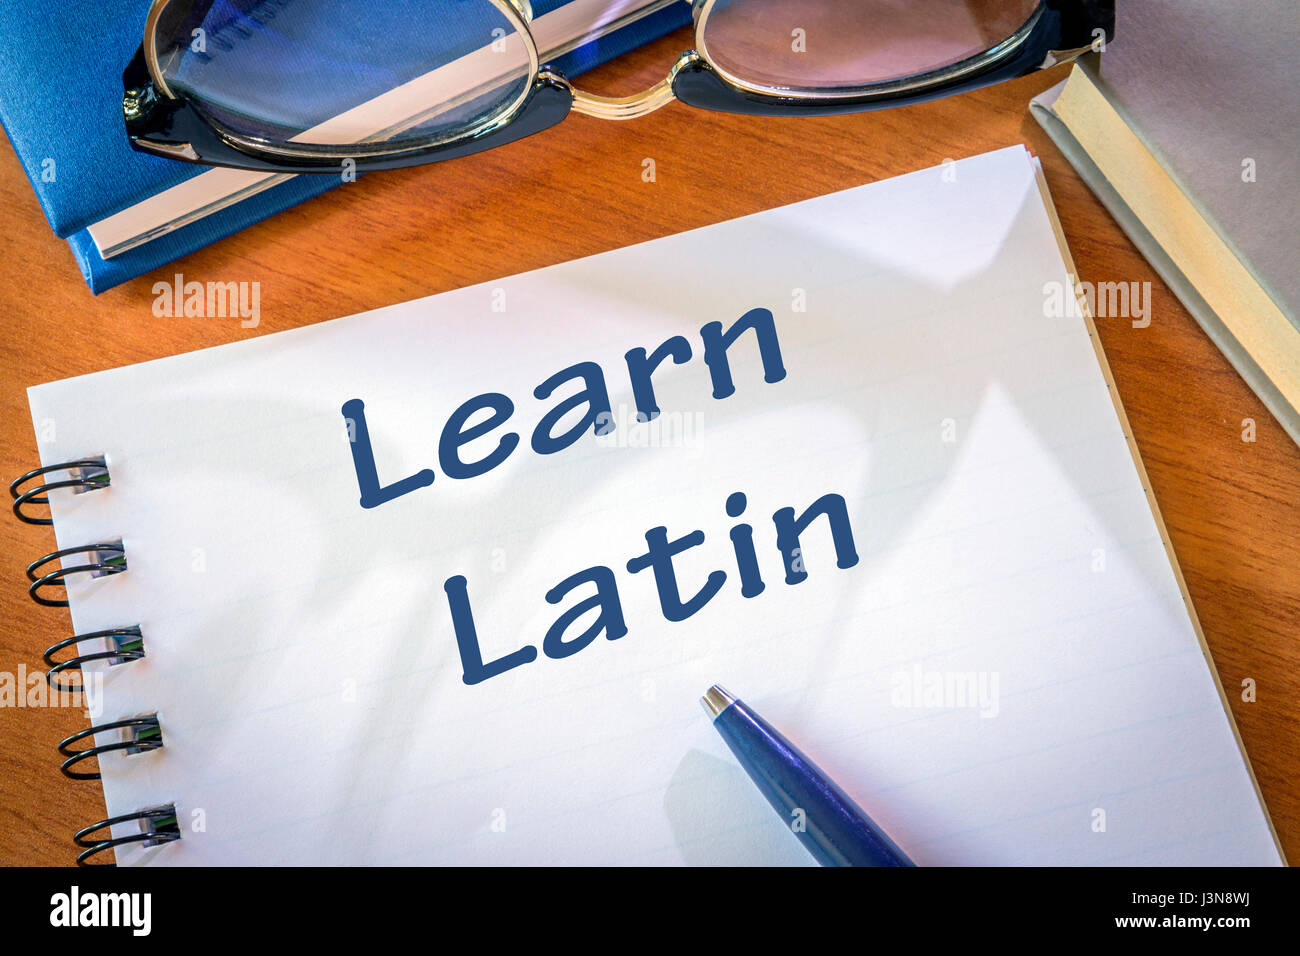 Apprendre le latin écrit dans un bloc-notes. Concept de l'éducation Banque D'Images